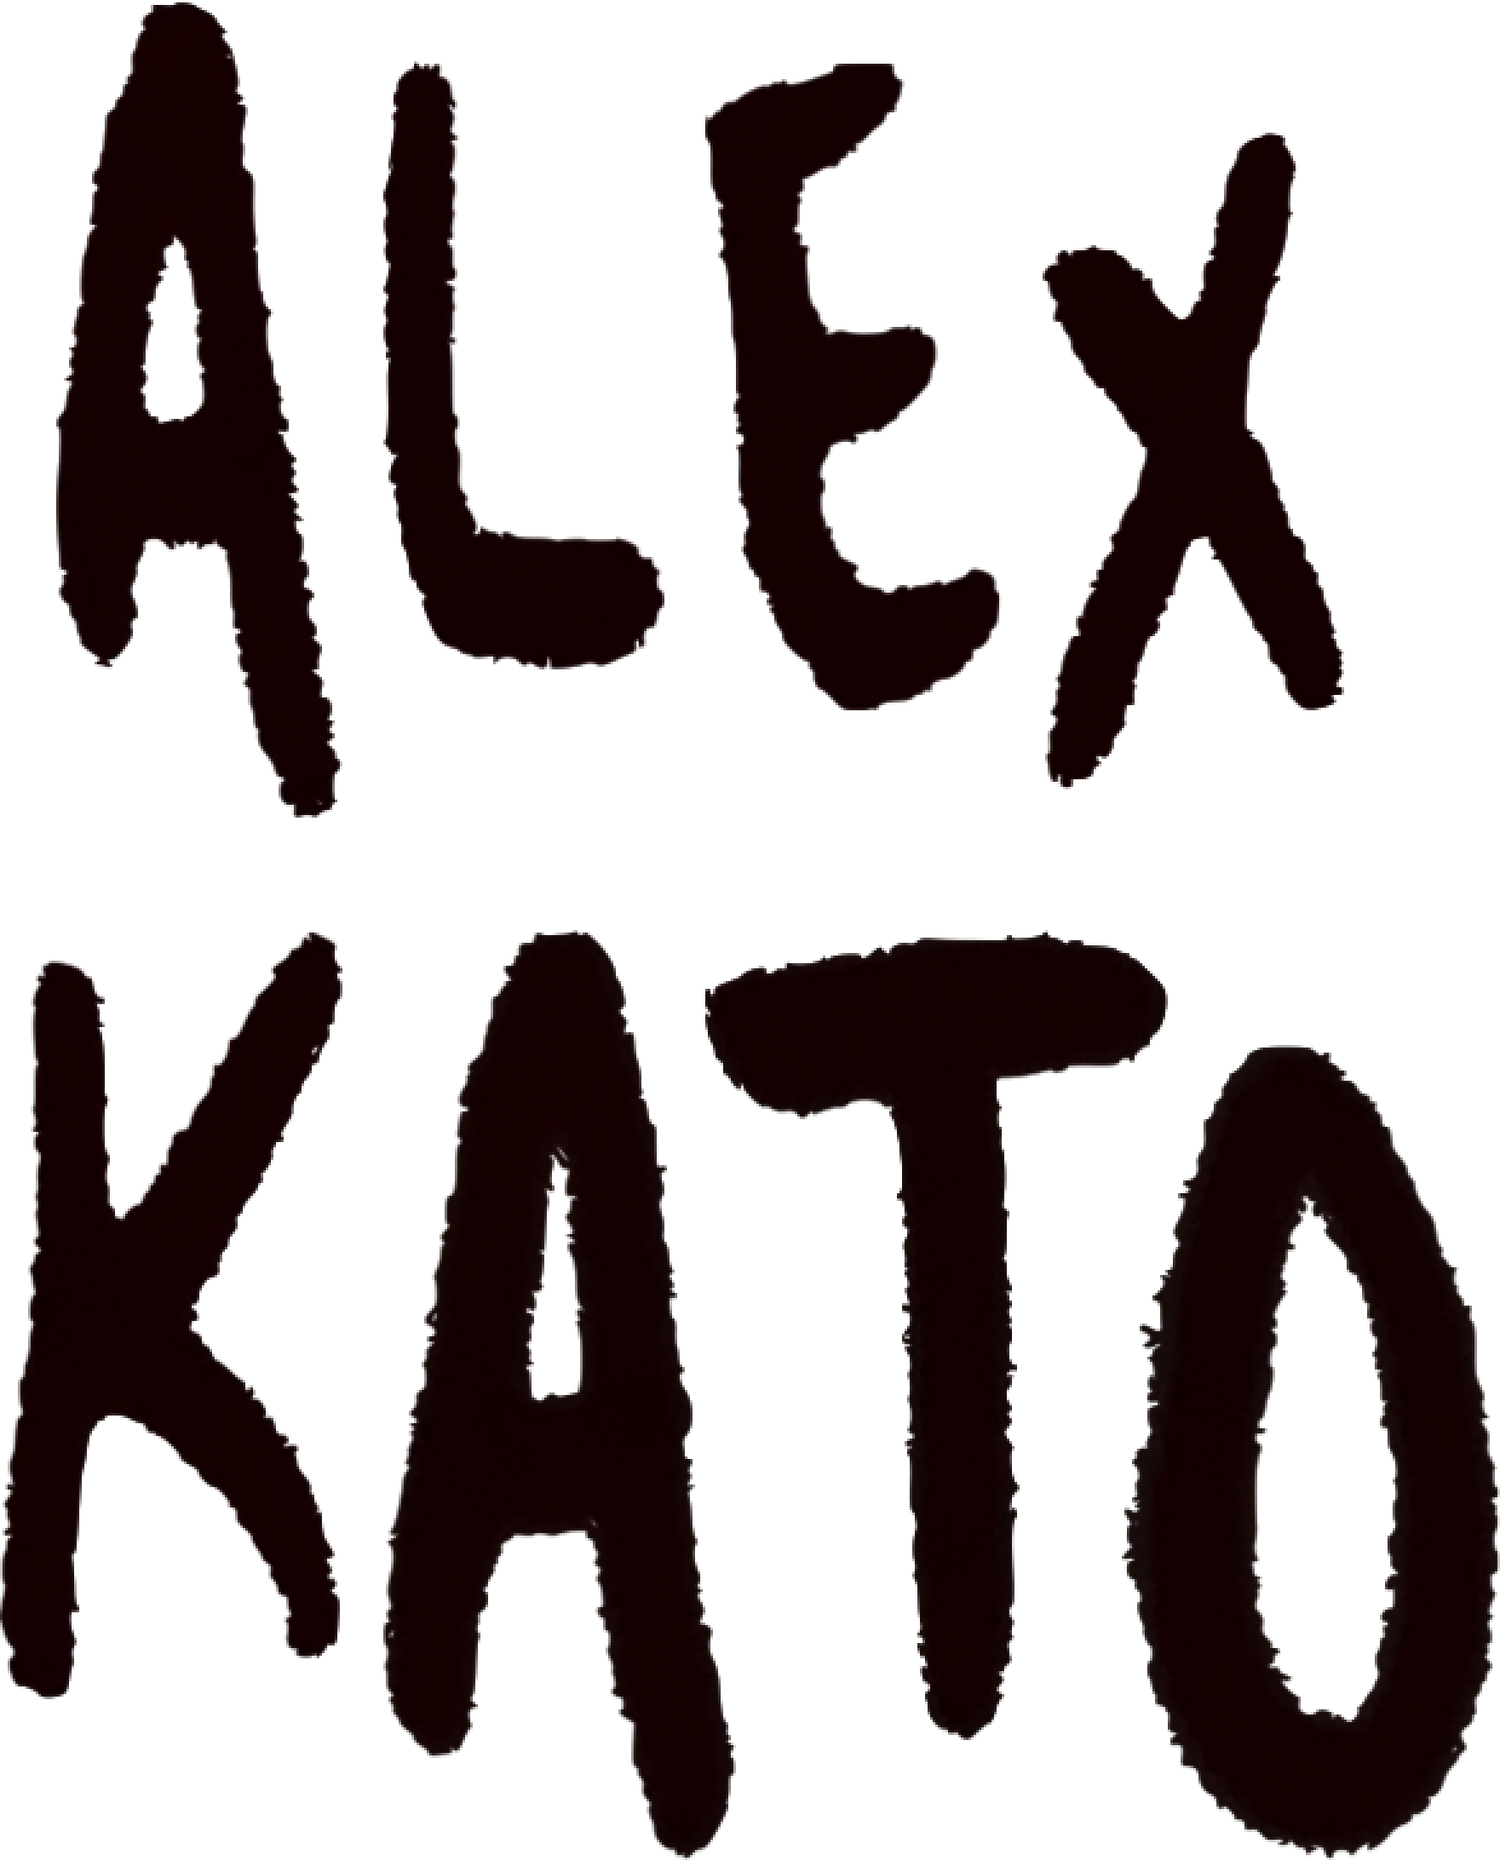 Alex Kato